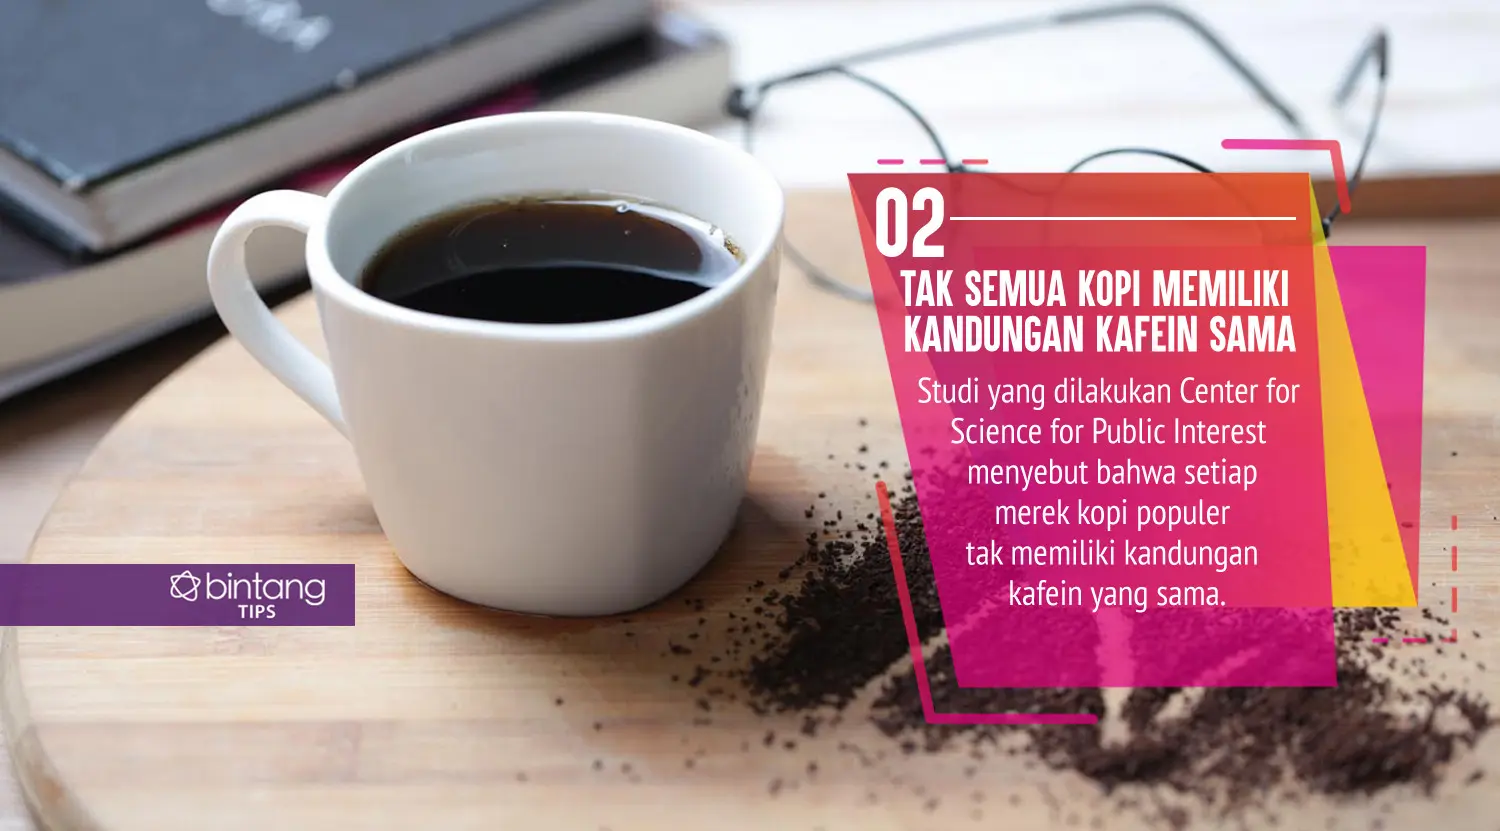 Fakta kafein yang harus kamu tahu. (Foto: Deki Prayoga, Digital Imaging: Nurman Abdul Hakim/Bintang.com)